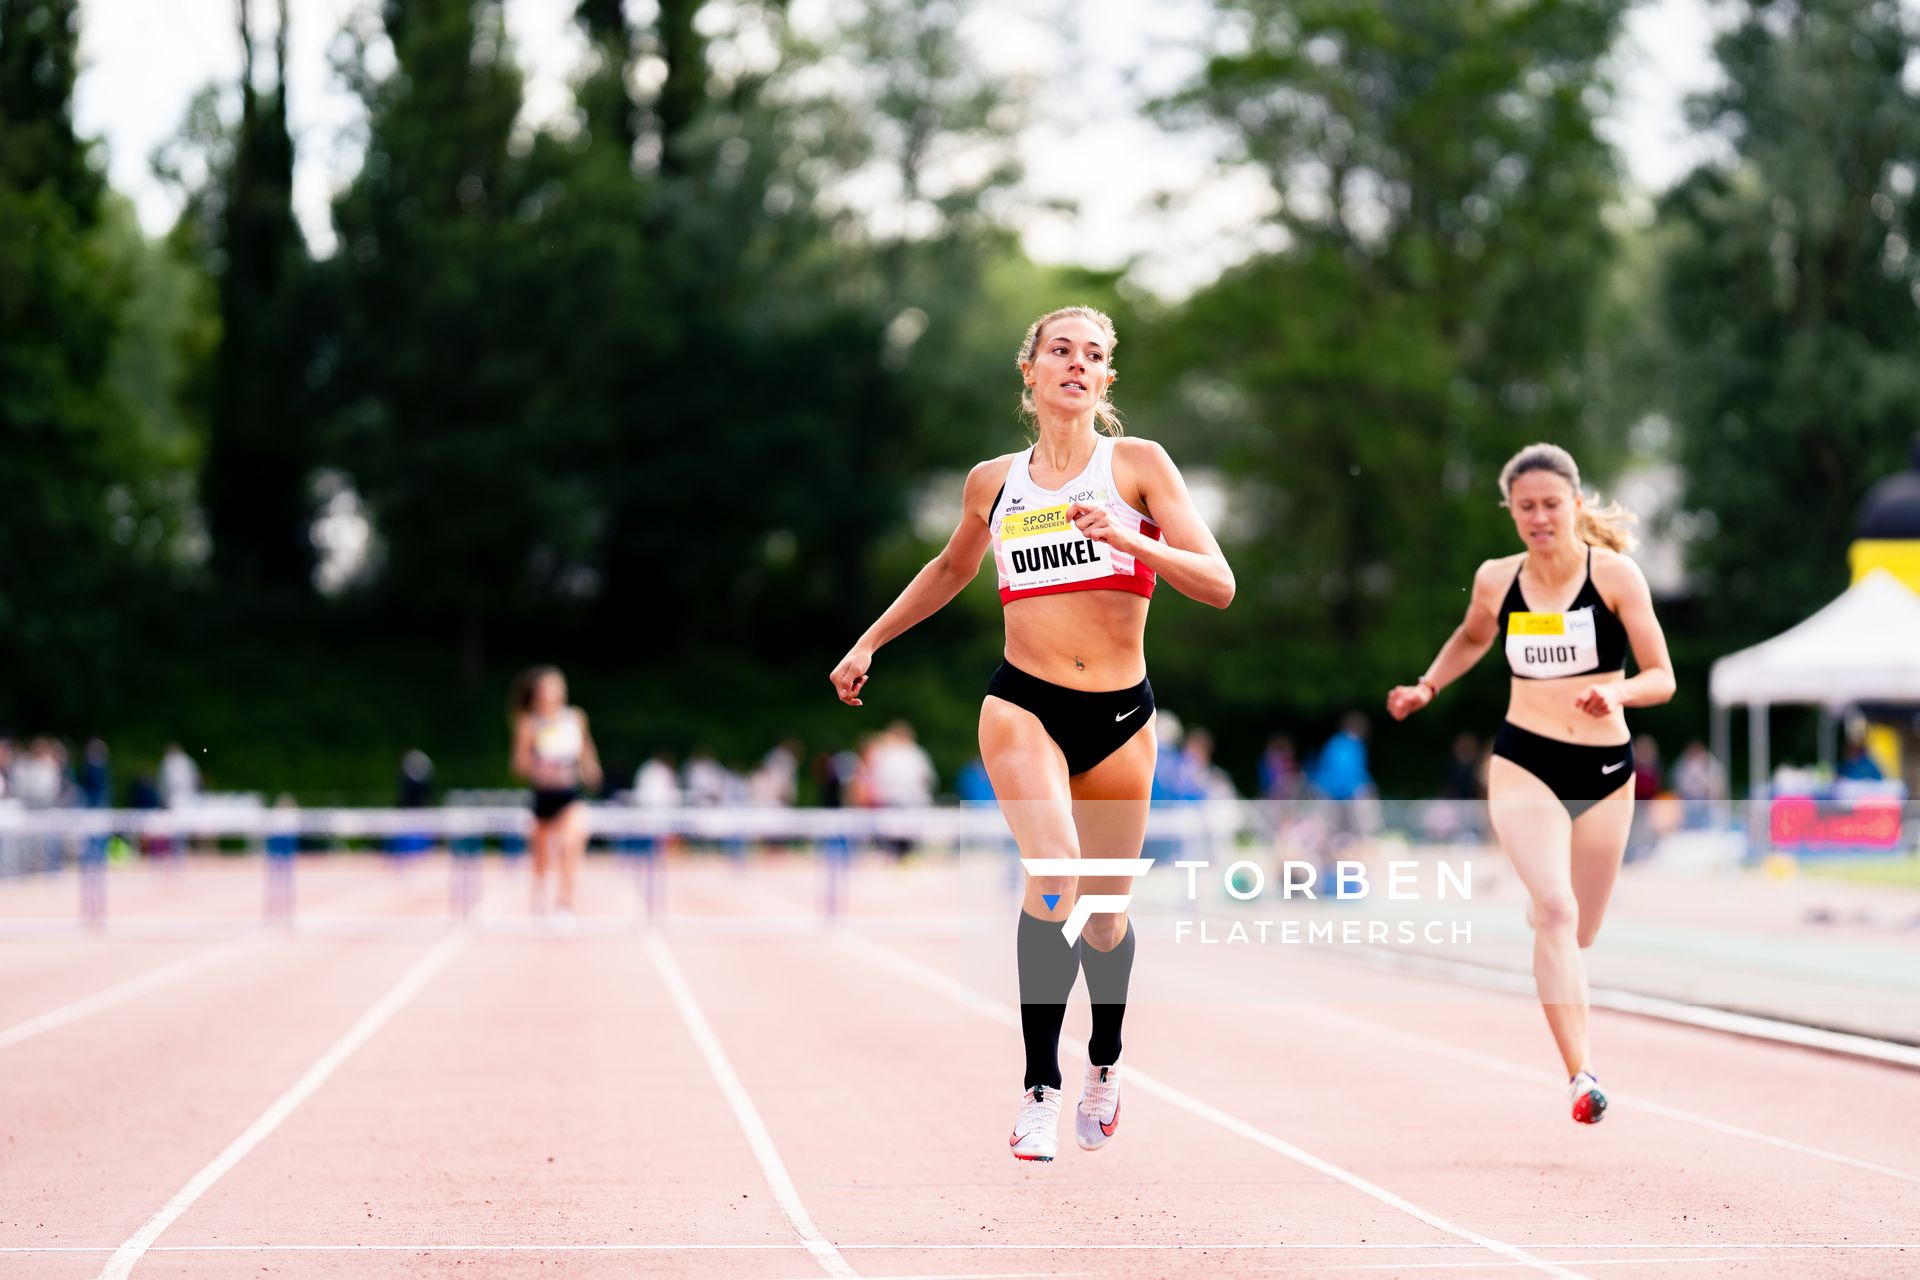 Marsha Dunkel (LC Rehlingen) ueber 400m Huerden am 28.05.2022 waehrend der World Athletics Continental Tour IFAM Oordegem in Oordegem